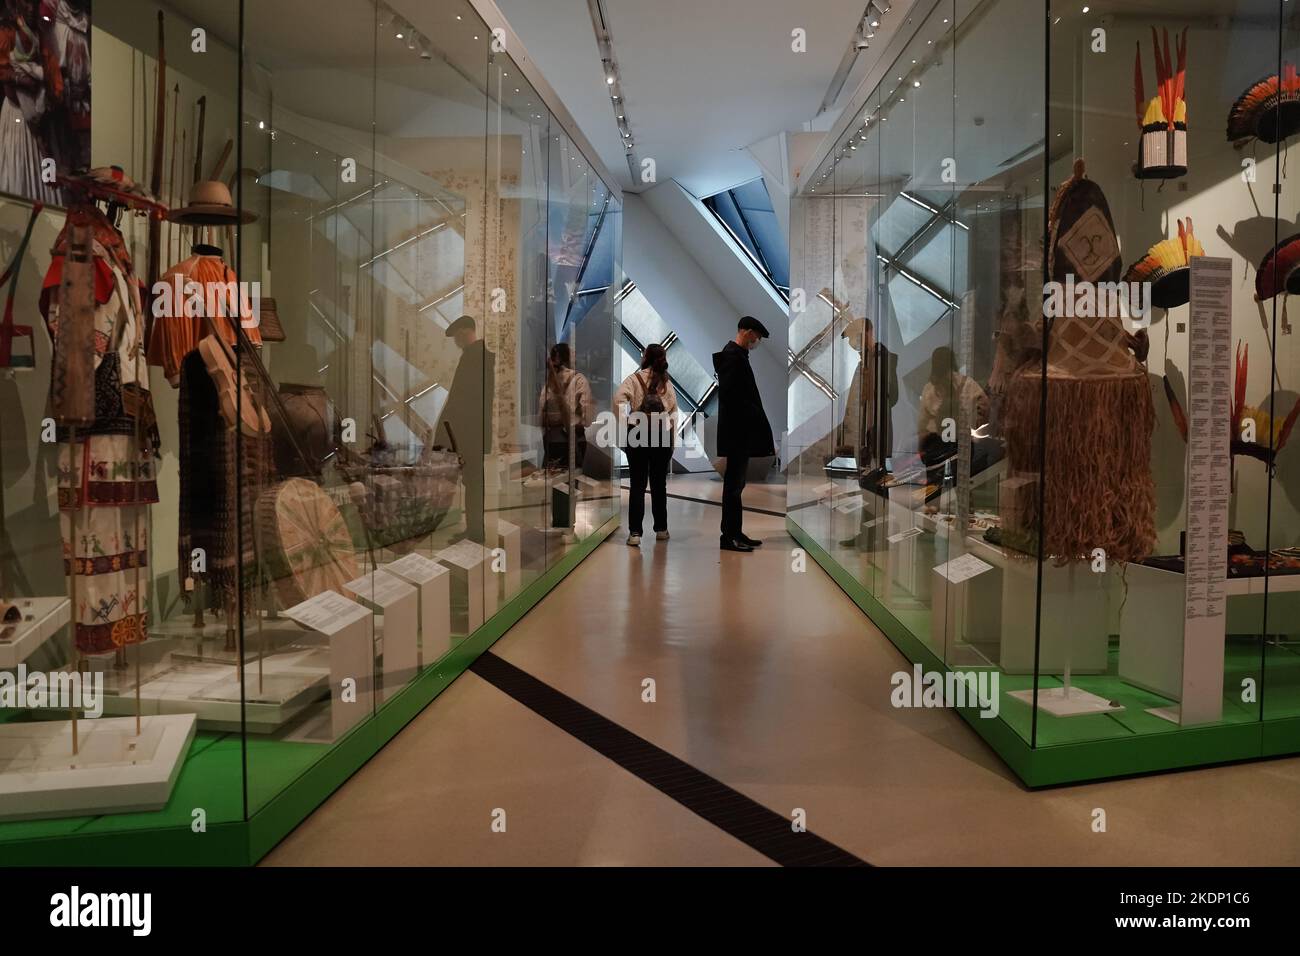 Les visiteurs à l'intérieur d'un musée découvrent des objets derrière de grandes expositions de verre Banque D'Images